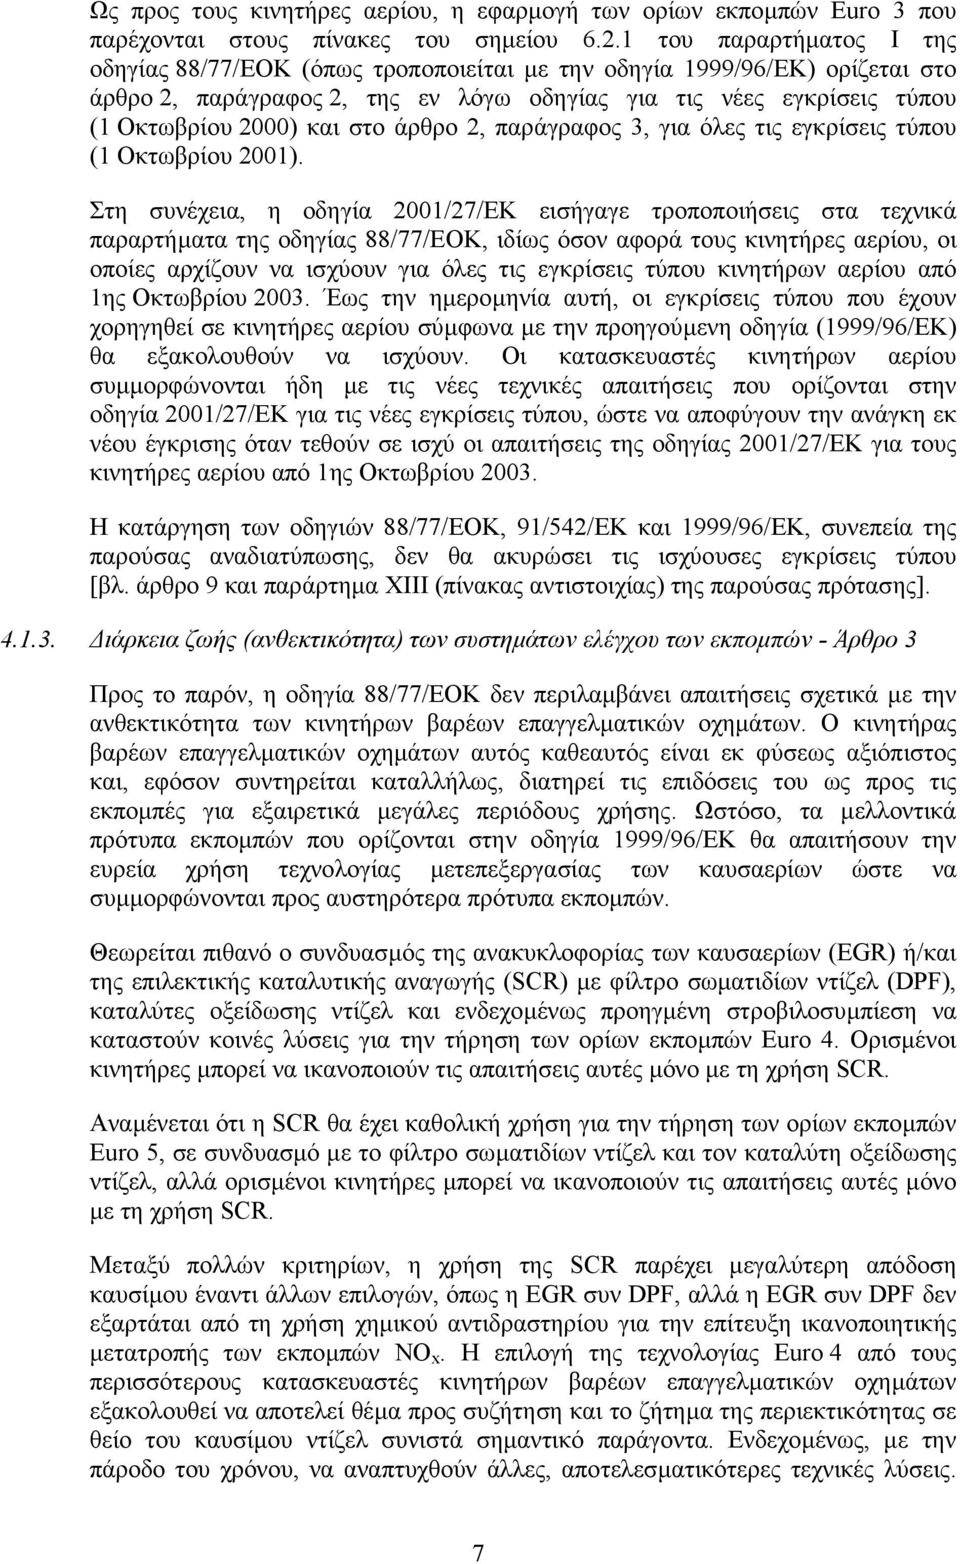 στο άρθρο 2, παράγραφος 3, για όλες τις εγκρίσεις τύπου (1 Οκτωβρίου 2001).